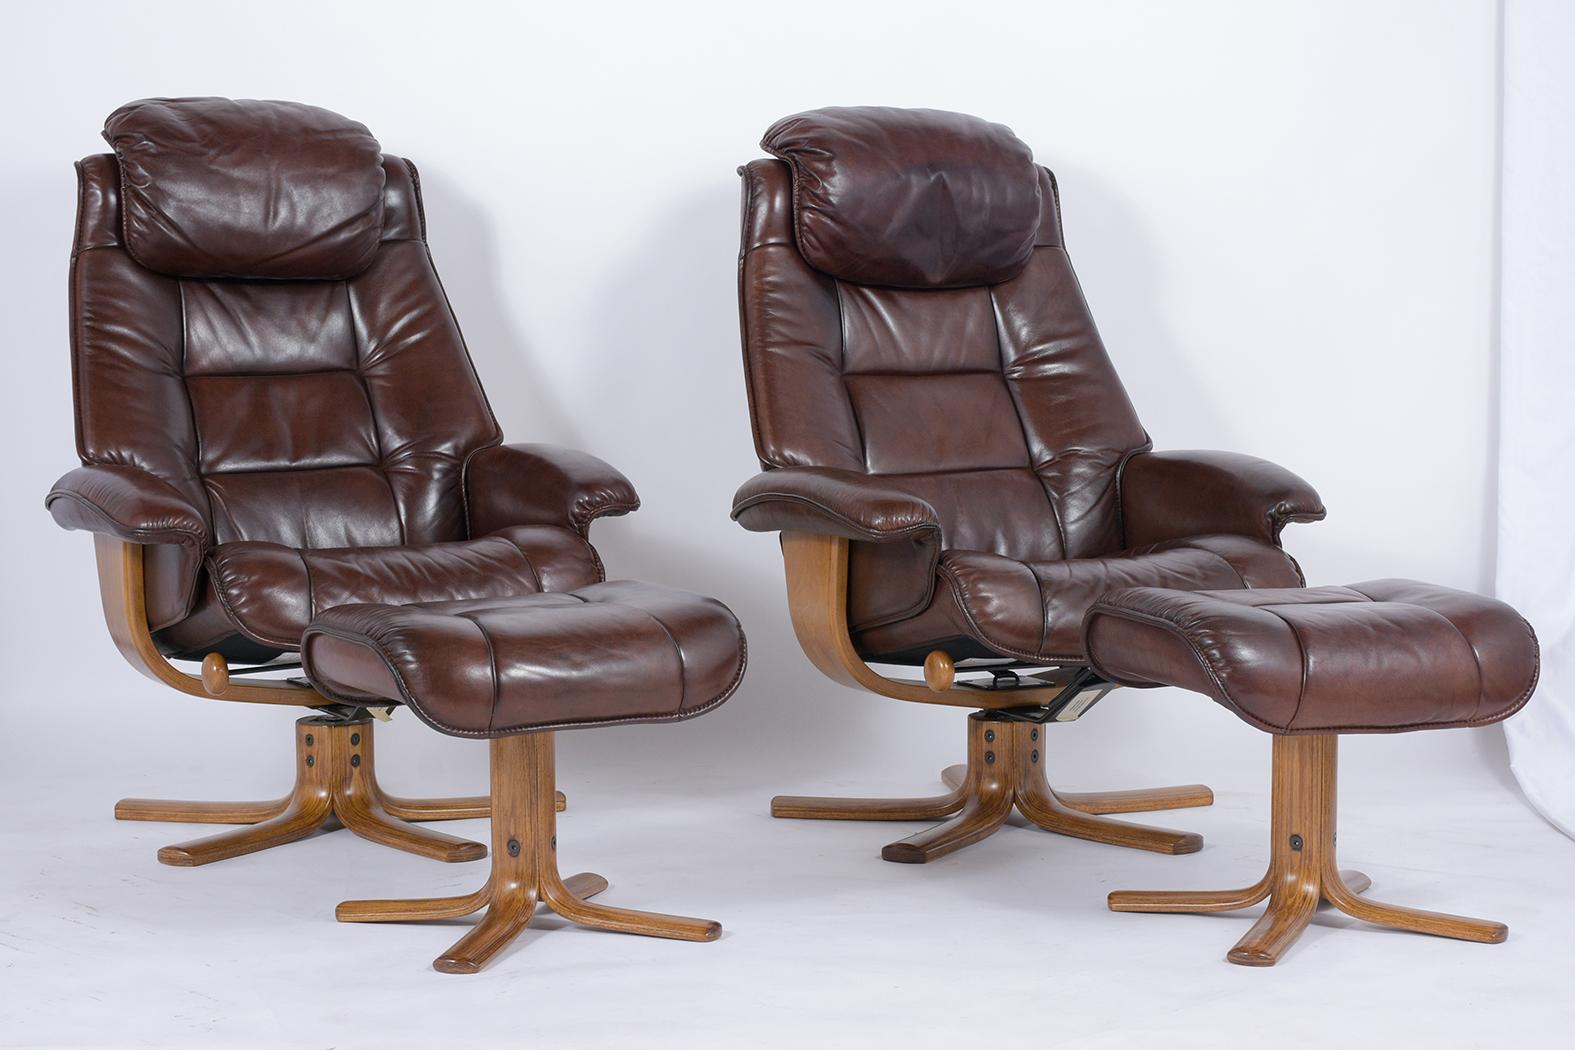 Tauchen Sie ein in den Inbegriff des dänischen Designs mit unserem Vintage Mid-Century Lounge Chair und Ottoman Set, das fachmännisch restauriert wurde und nun eine moderne Eleganz ausstrahlt. Dieses mit originalem Leder gepolsterte Set, das jetzt